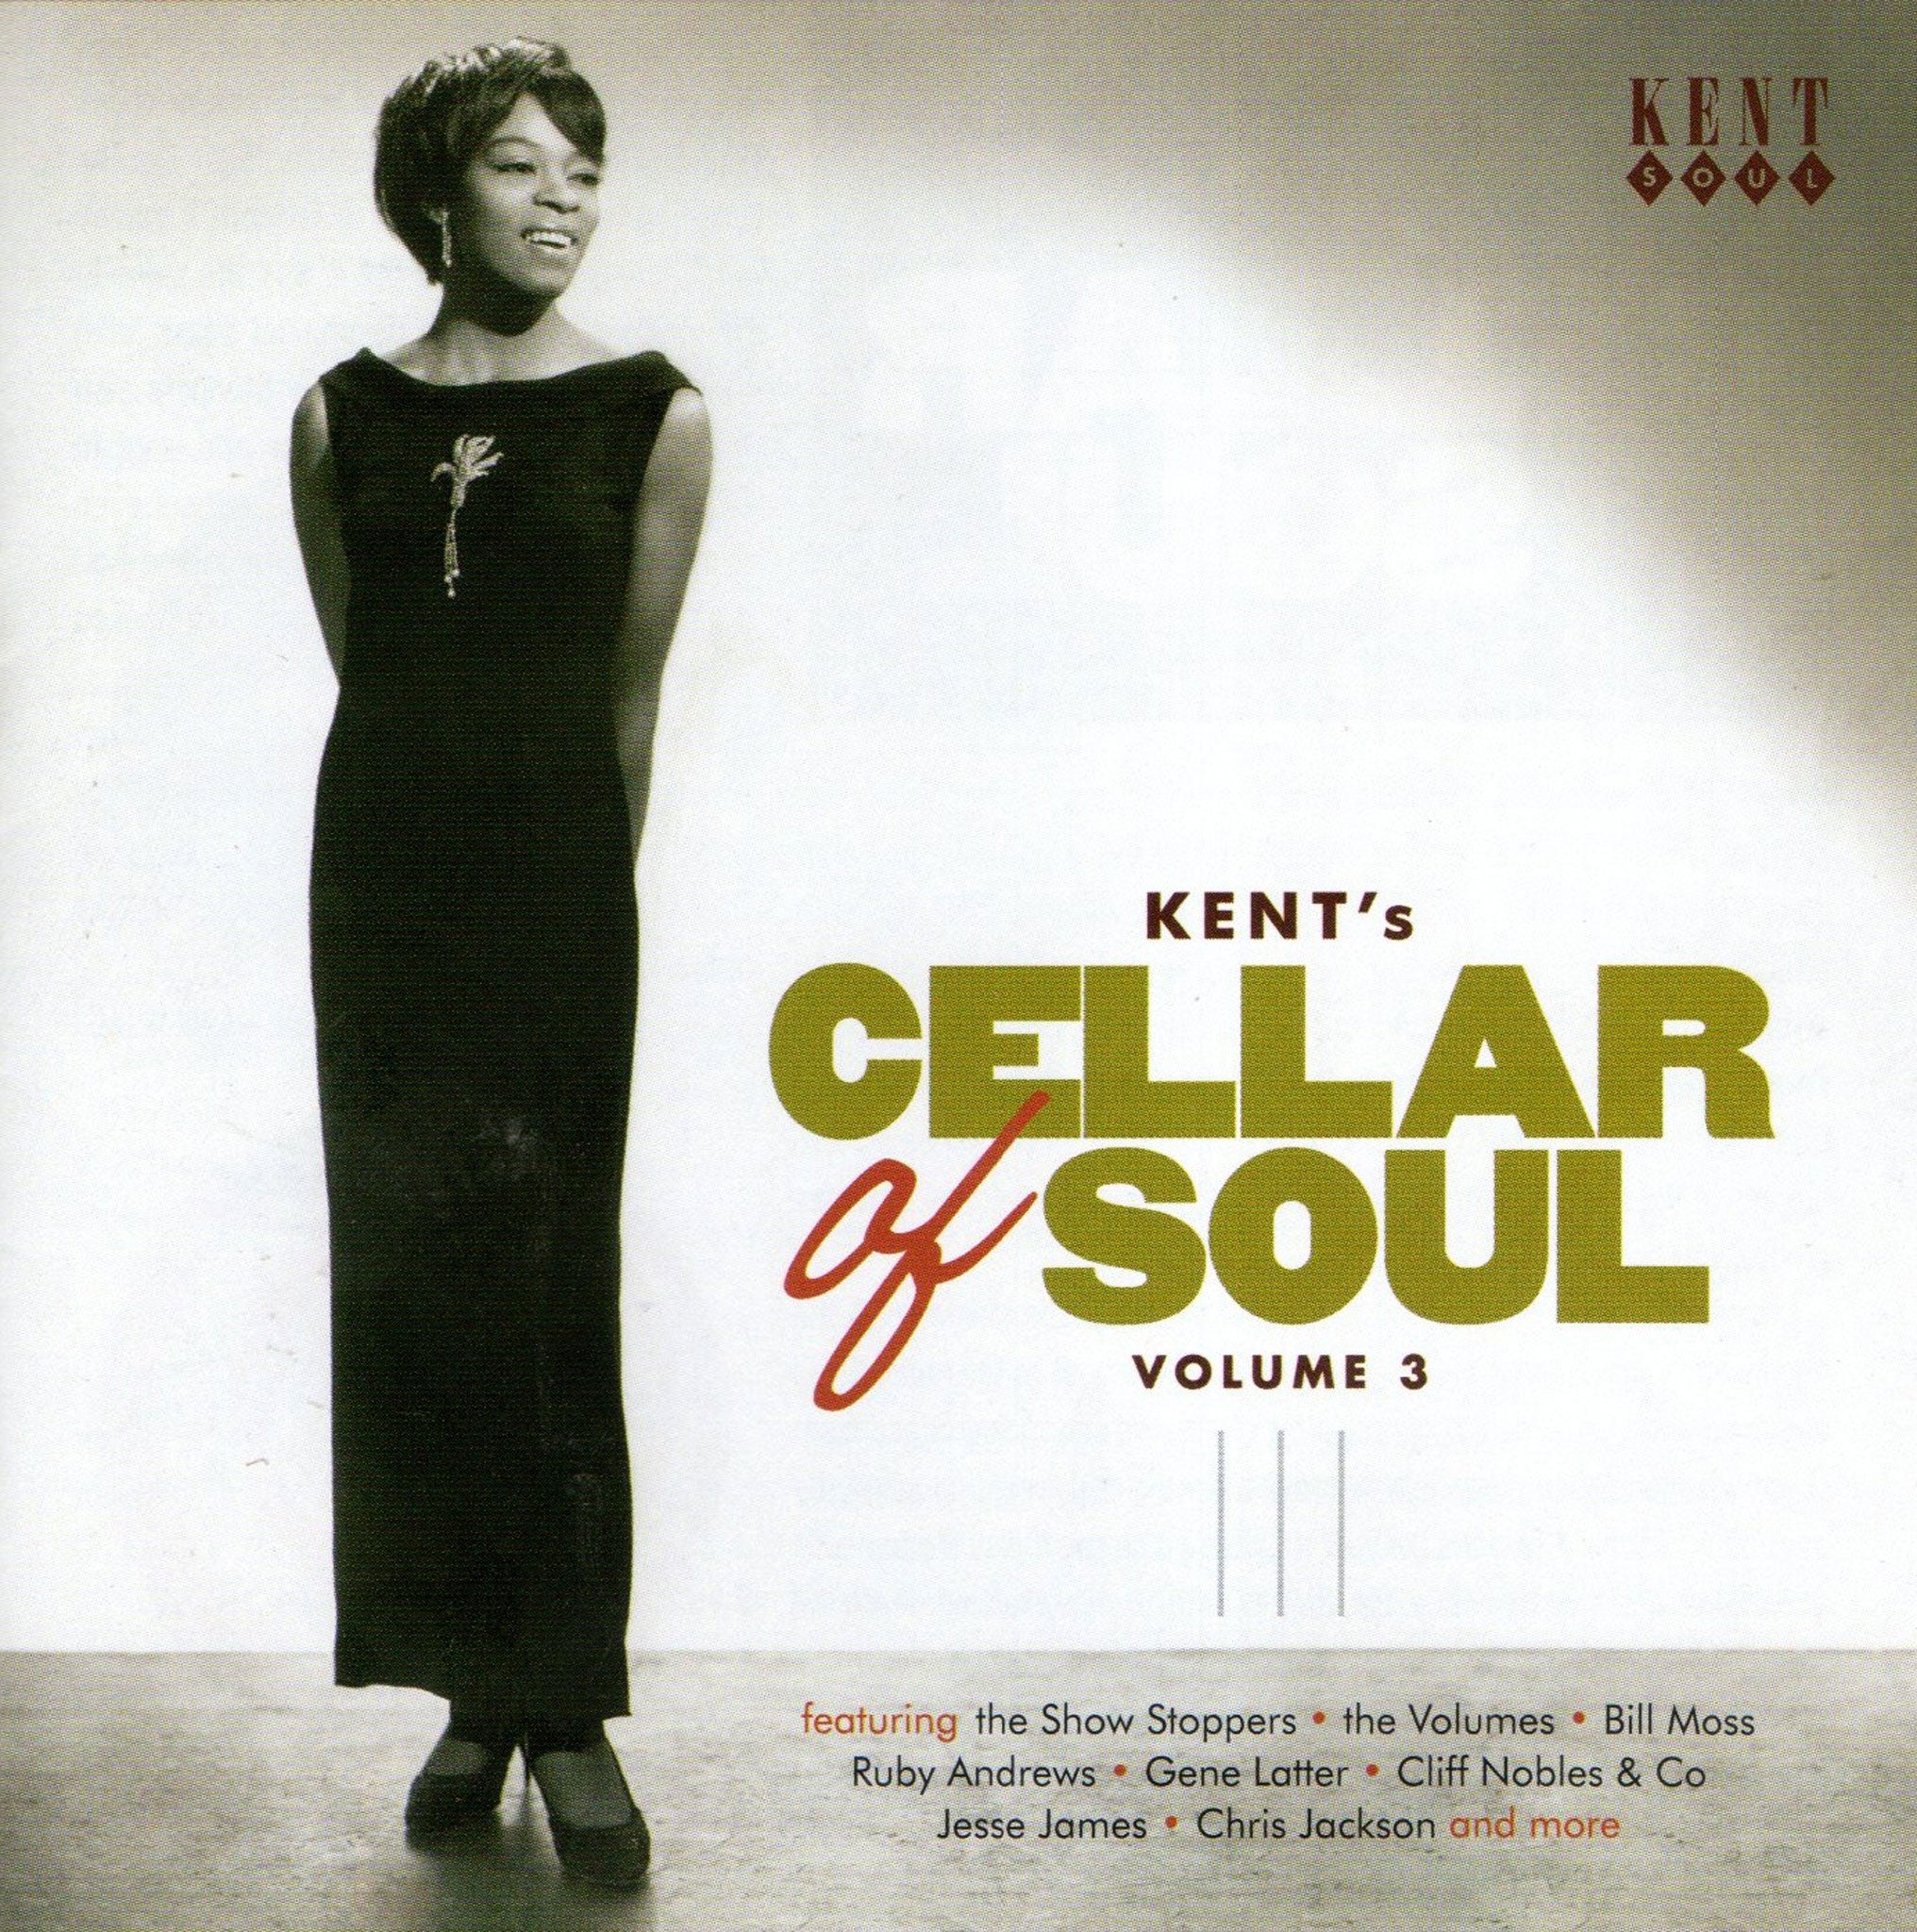 Kent's Cellar of Soul, volume 3